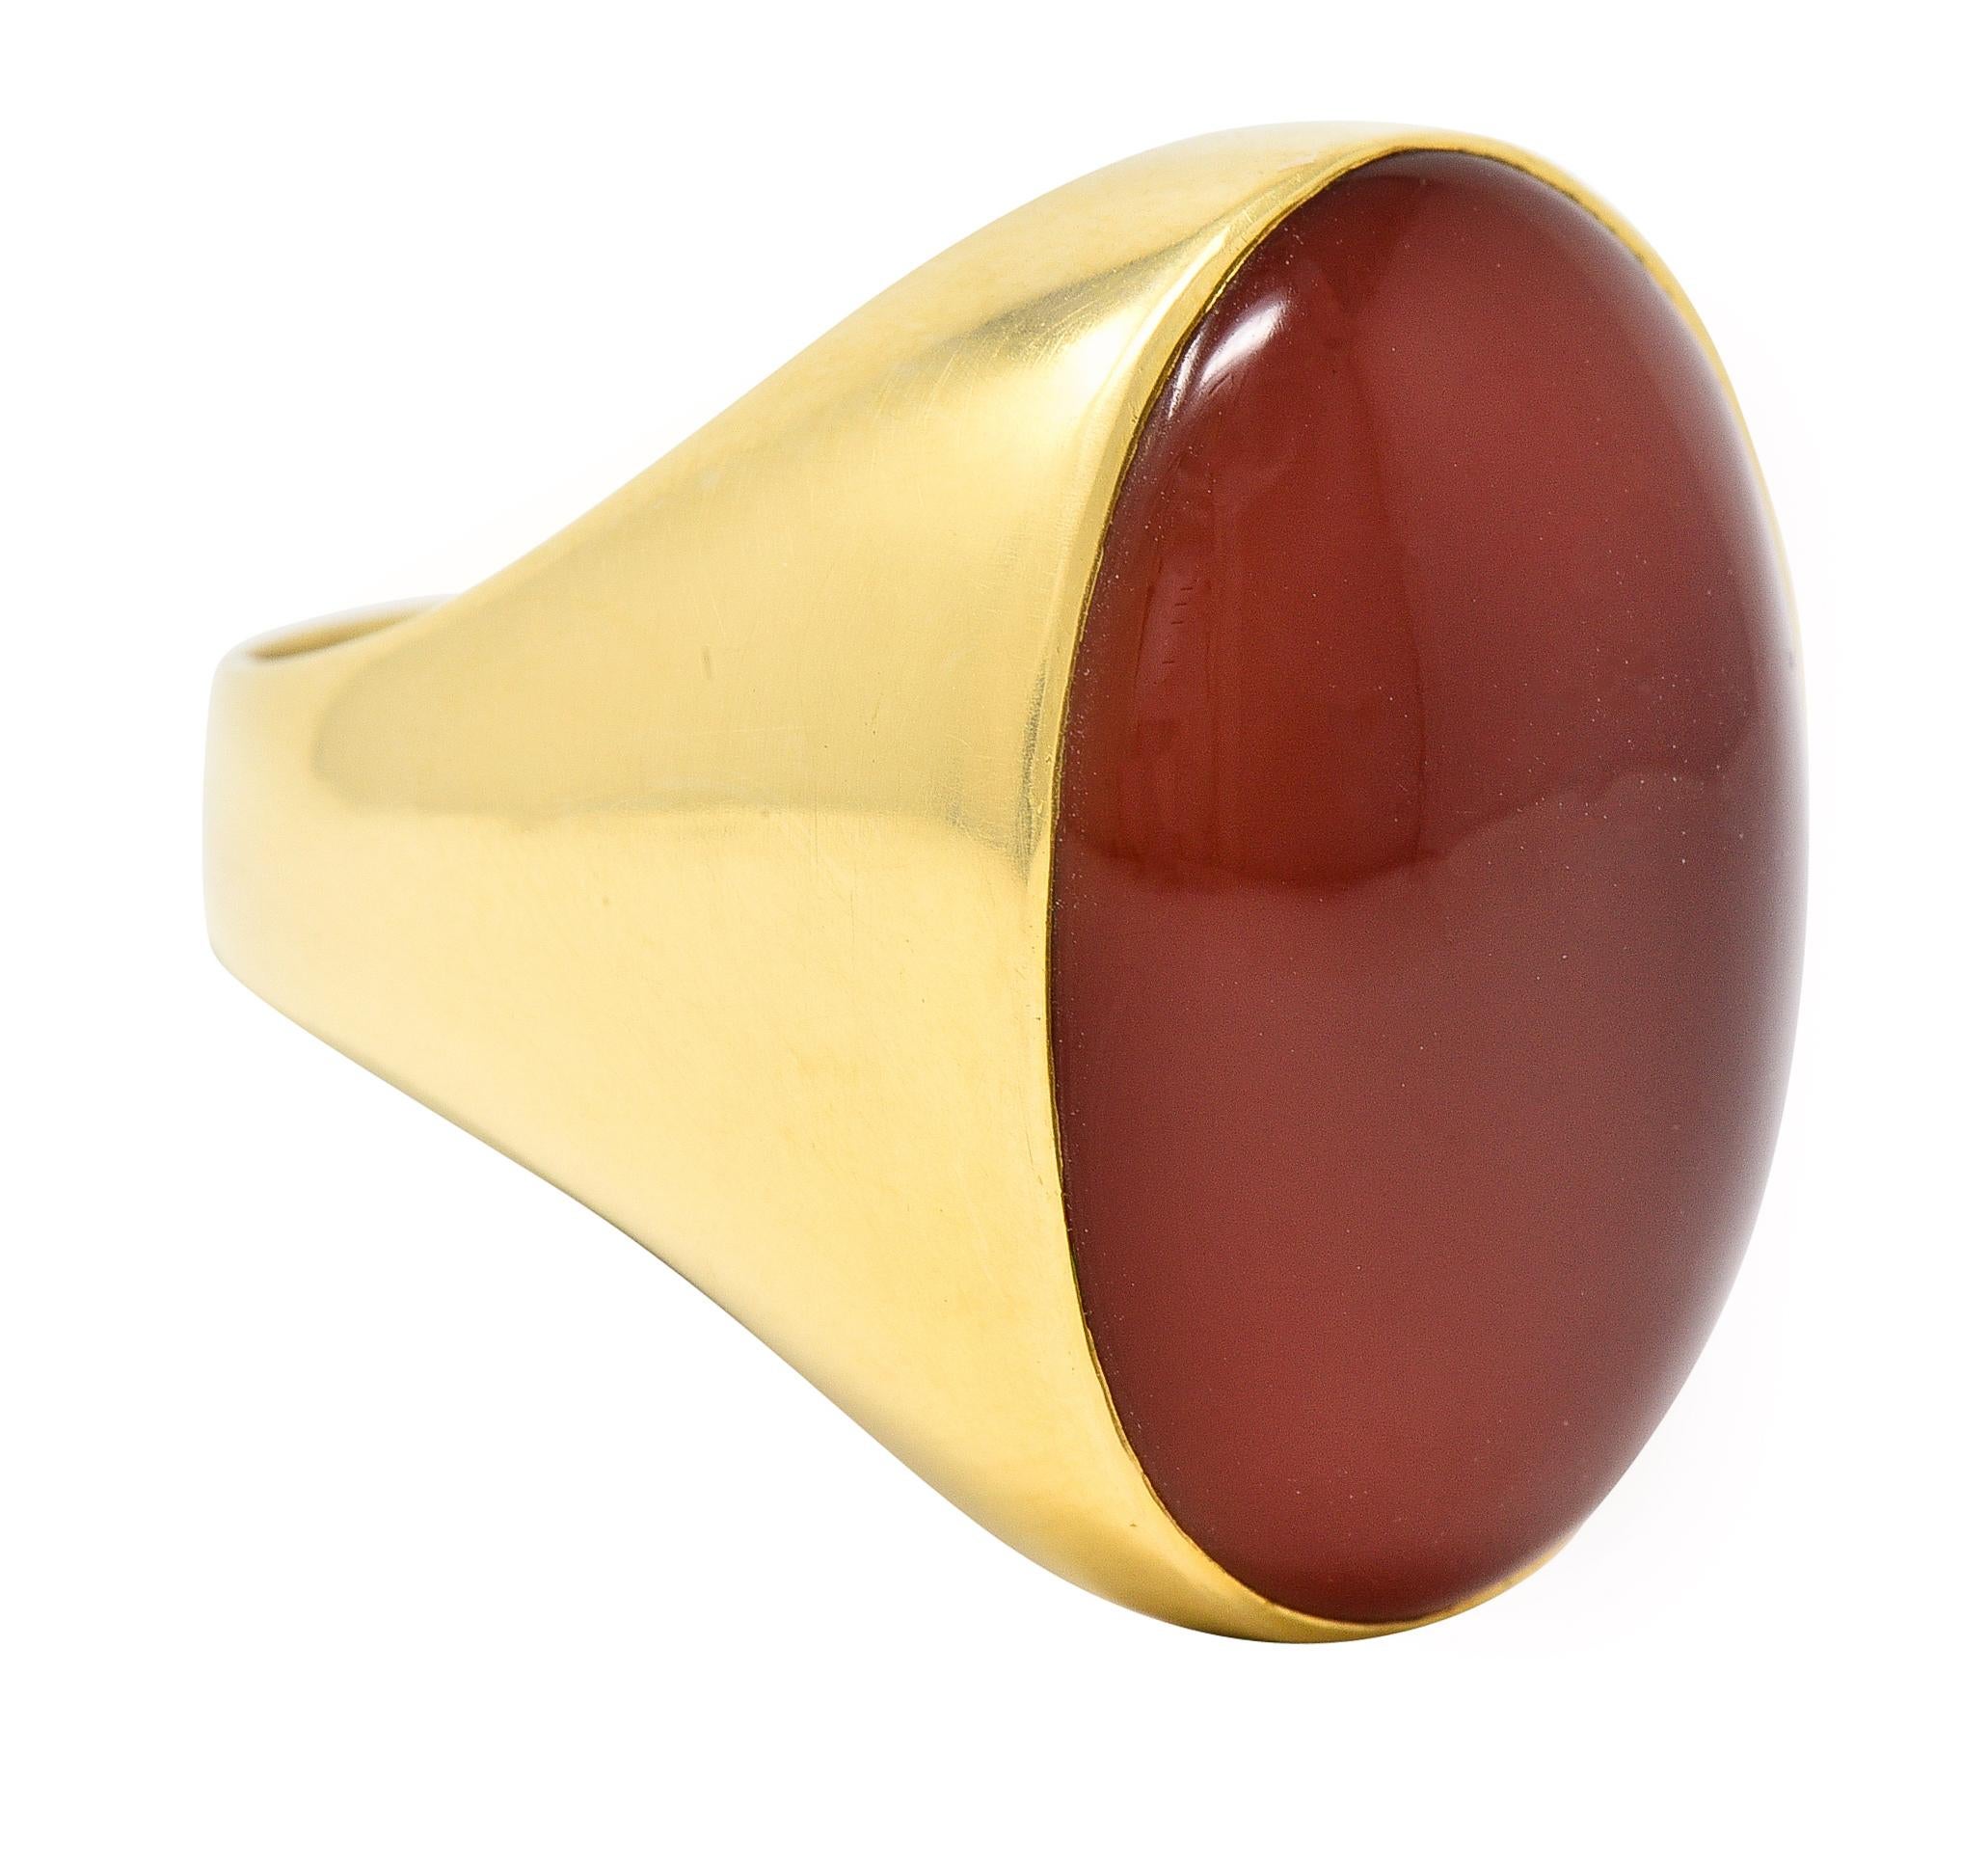 Le cabochon de cornaline de forme ovale mesure 17,5 x 25,0 mm. Couleur orange rougeâtre moyen translucide. Encastré dans un cadre en or. Estampillé pour l'or 18 carats. Circa : 1960's. Taille de la bague : 10 1/2 et assez grande. Elle mesure 25,5 mm